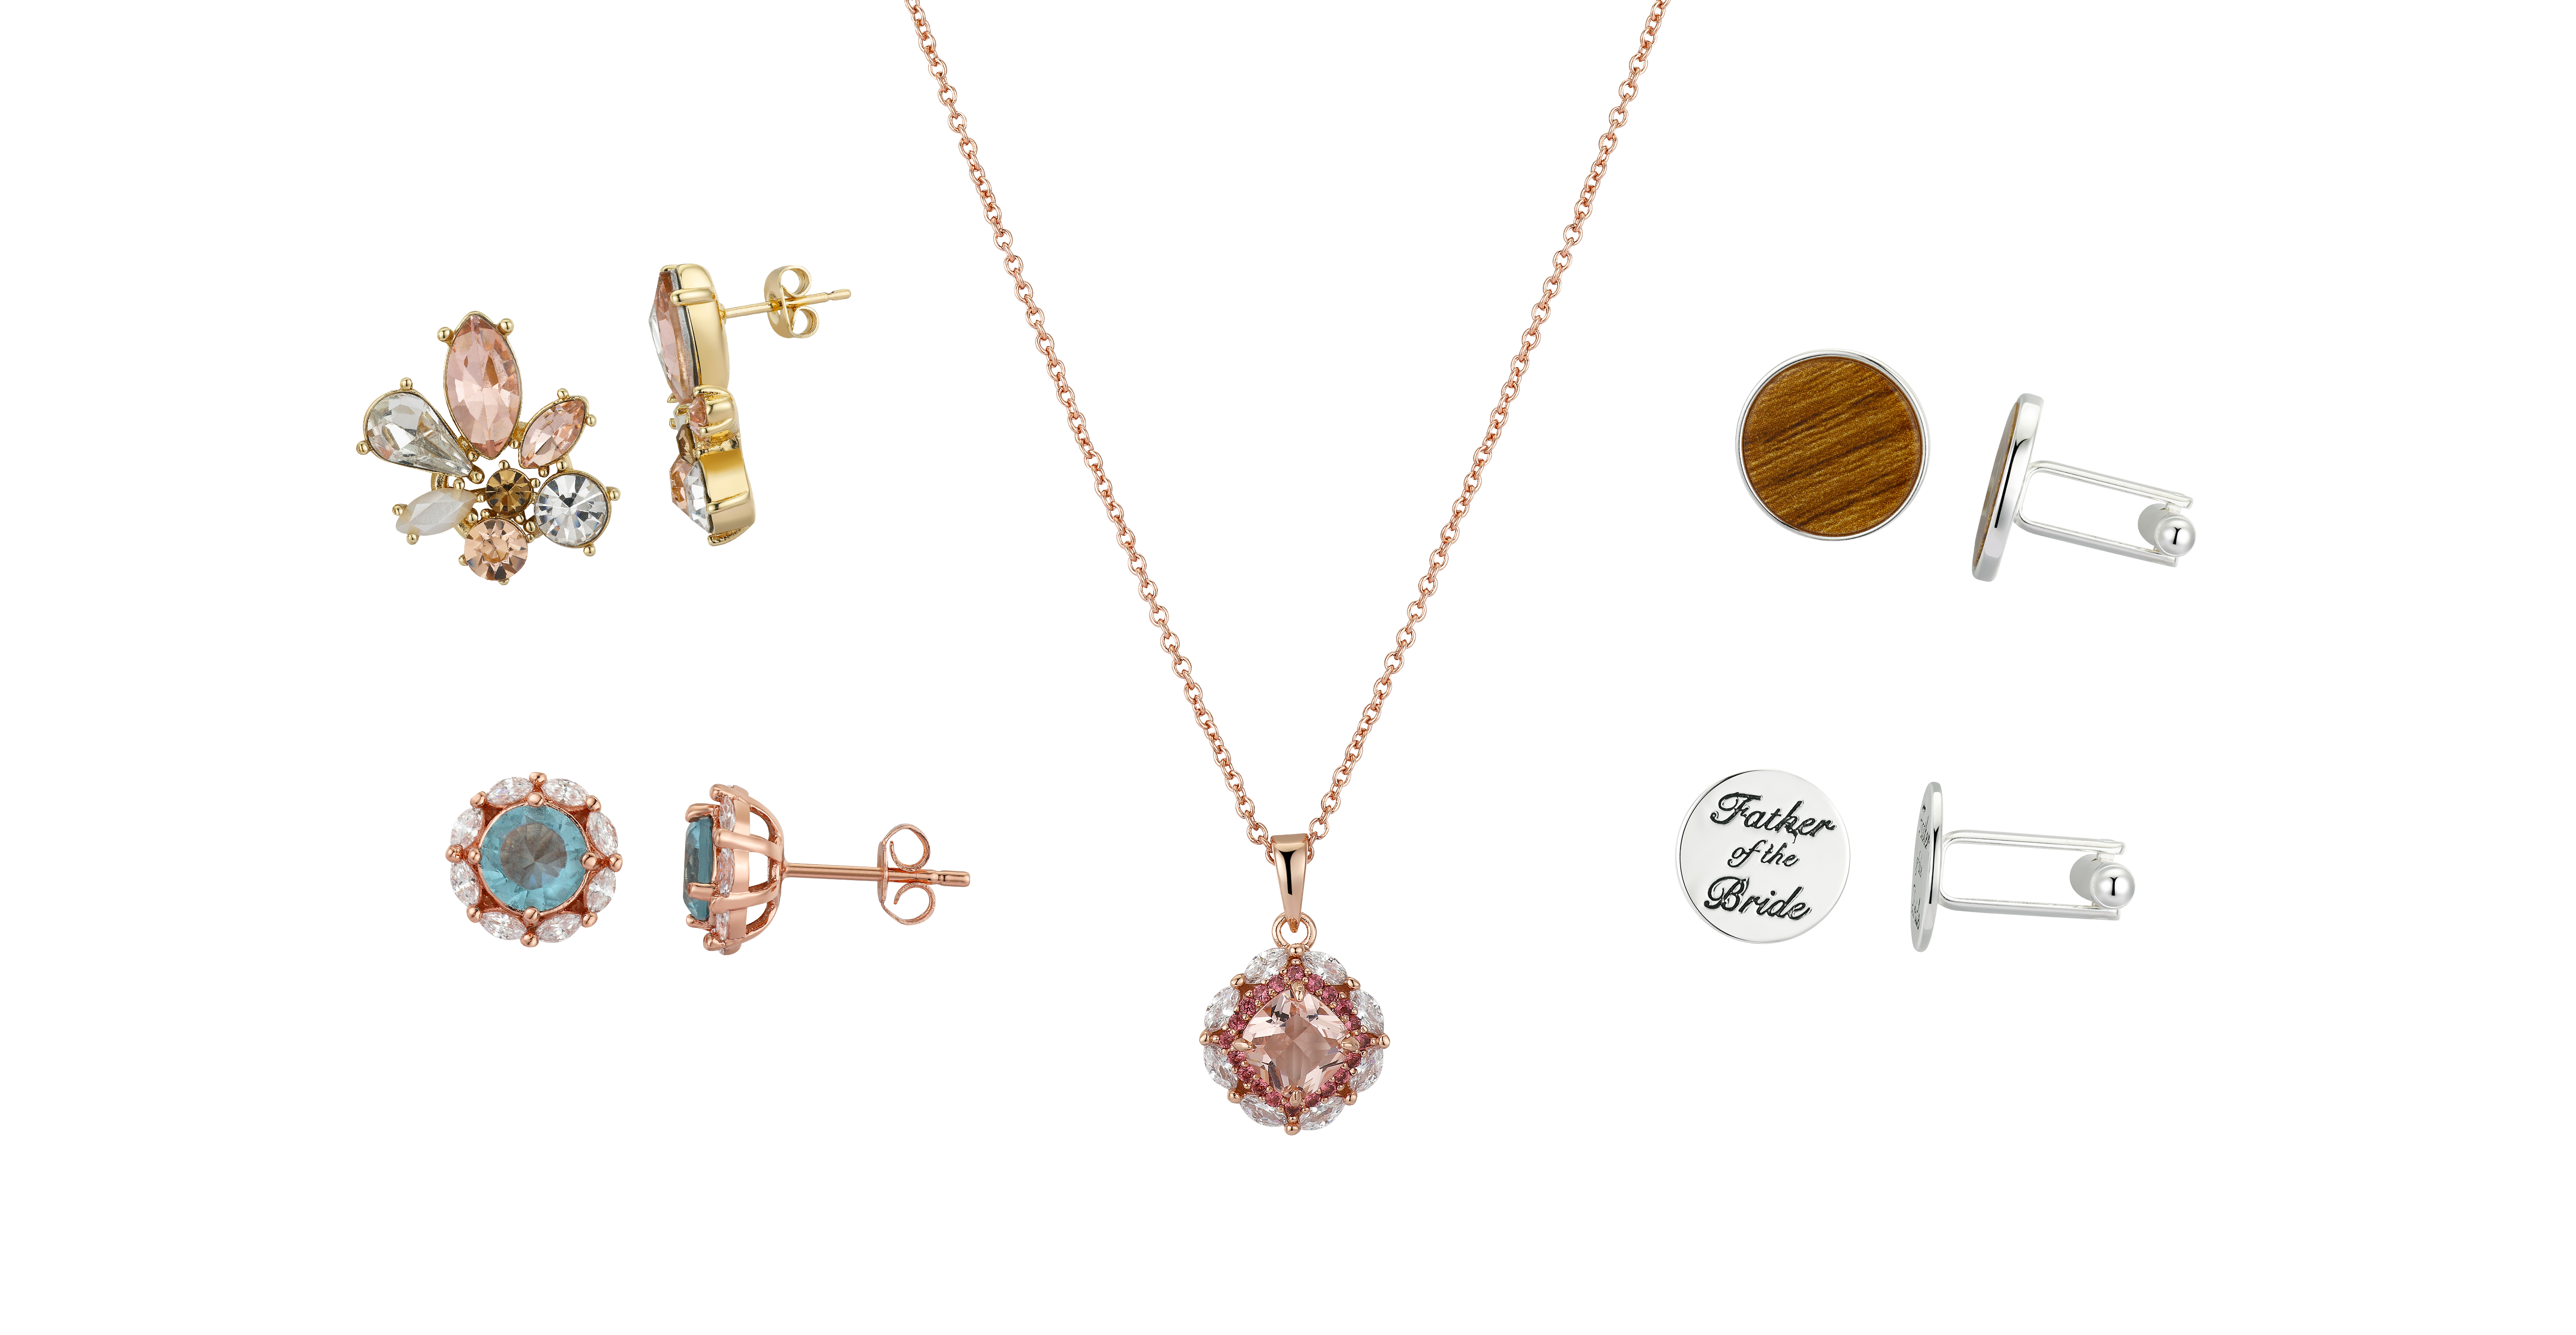 来自David Tutera的拼贴珠宝包括华丽的吊坠、袖扣和耳环。